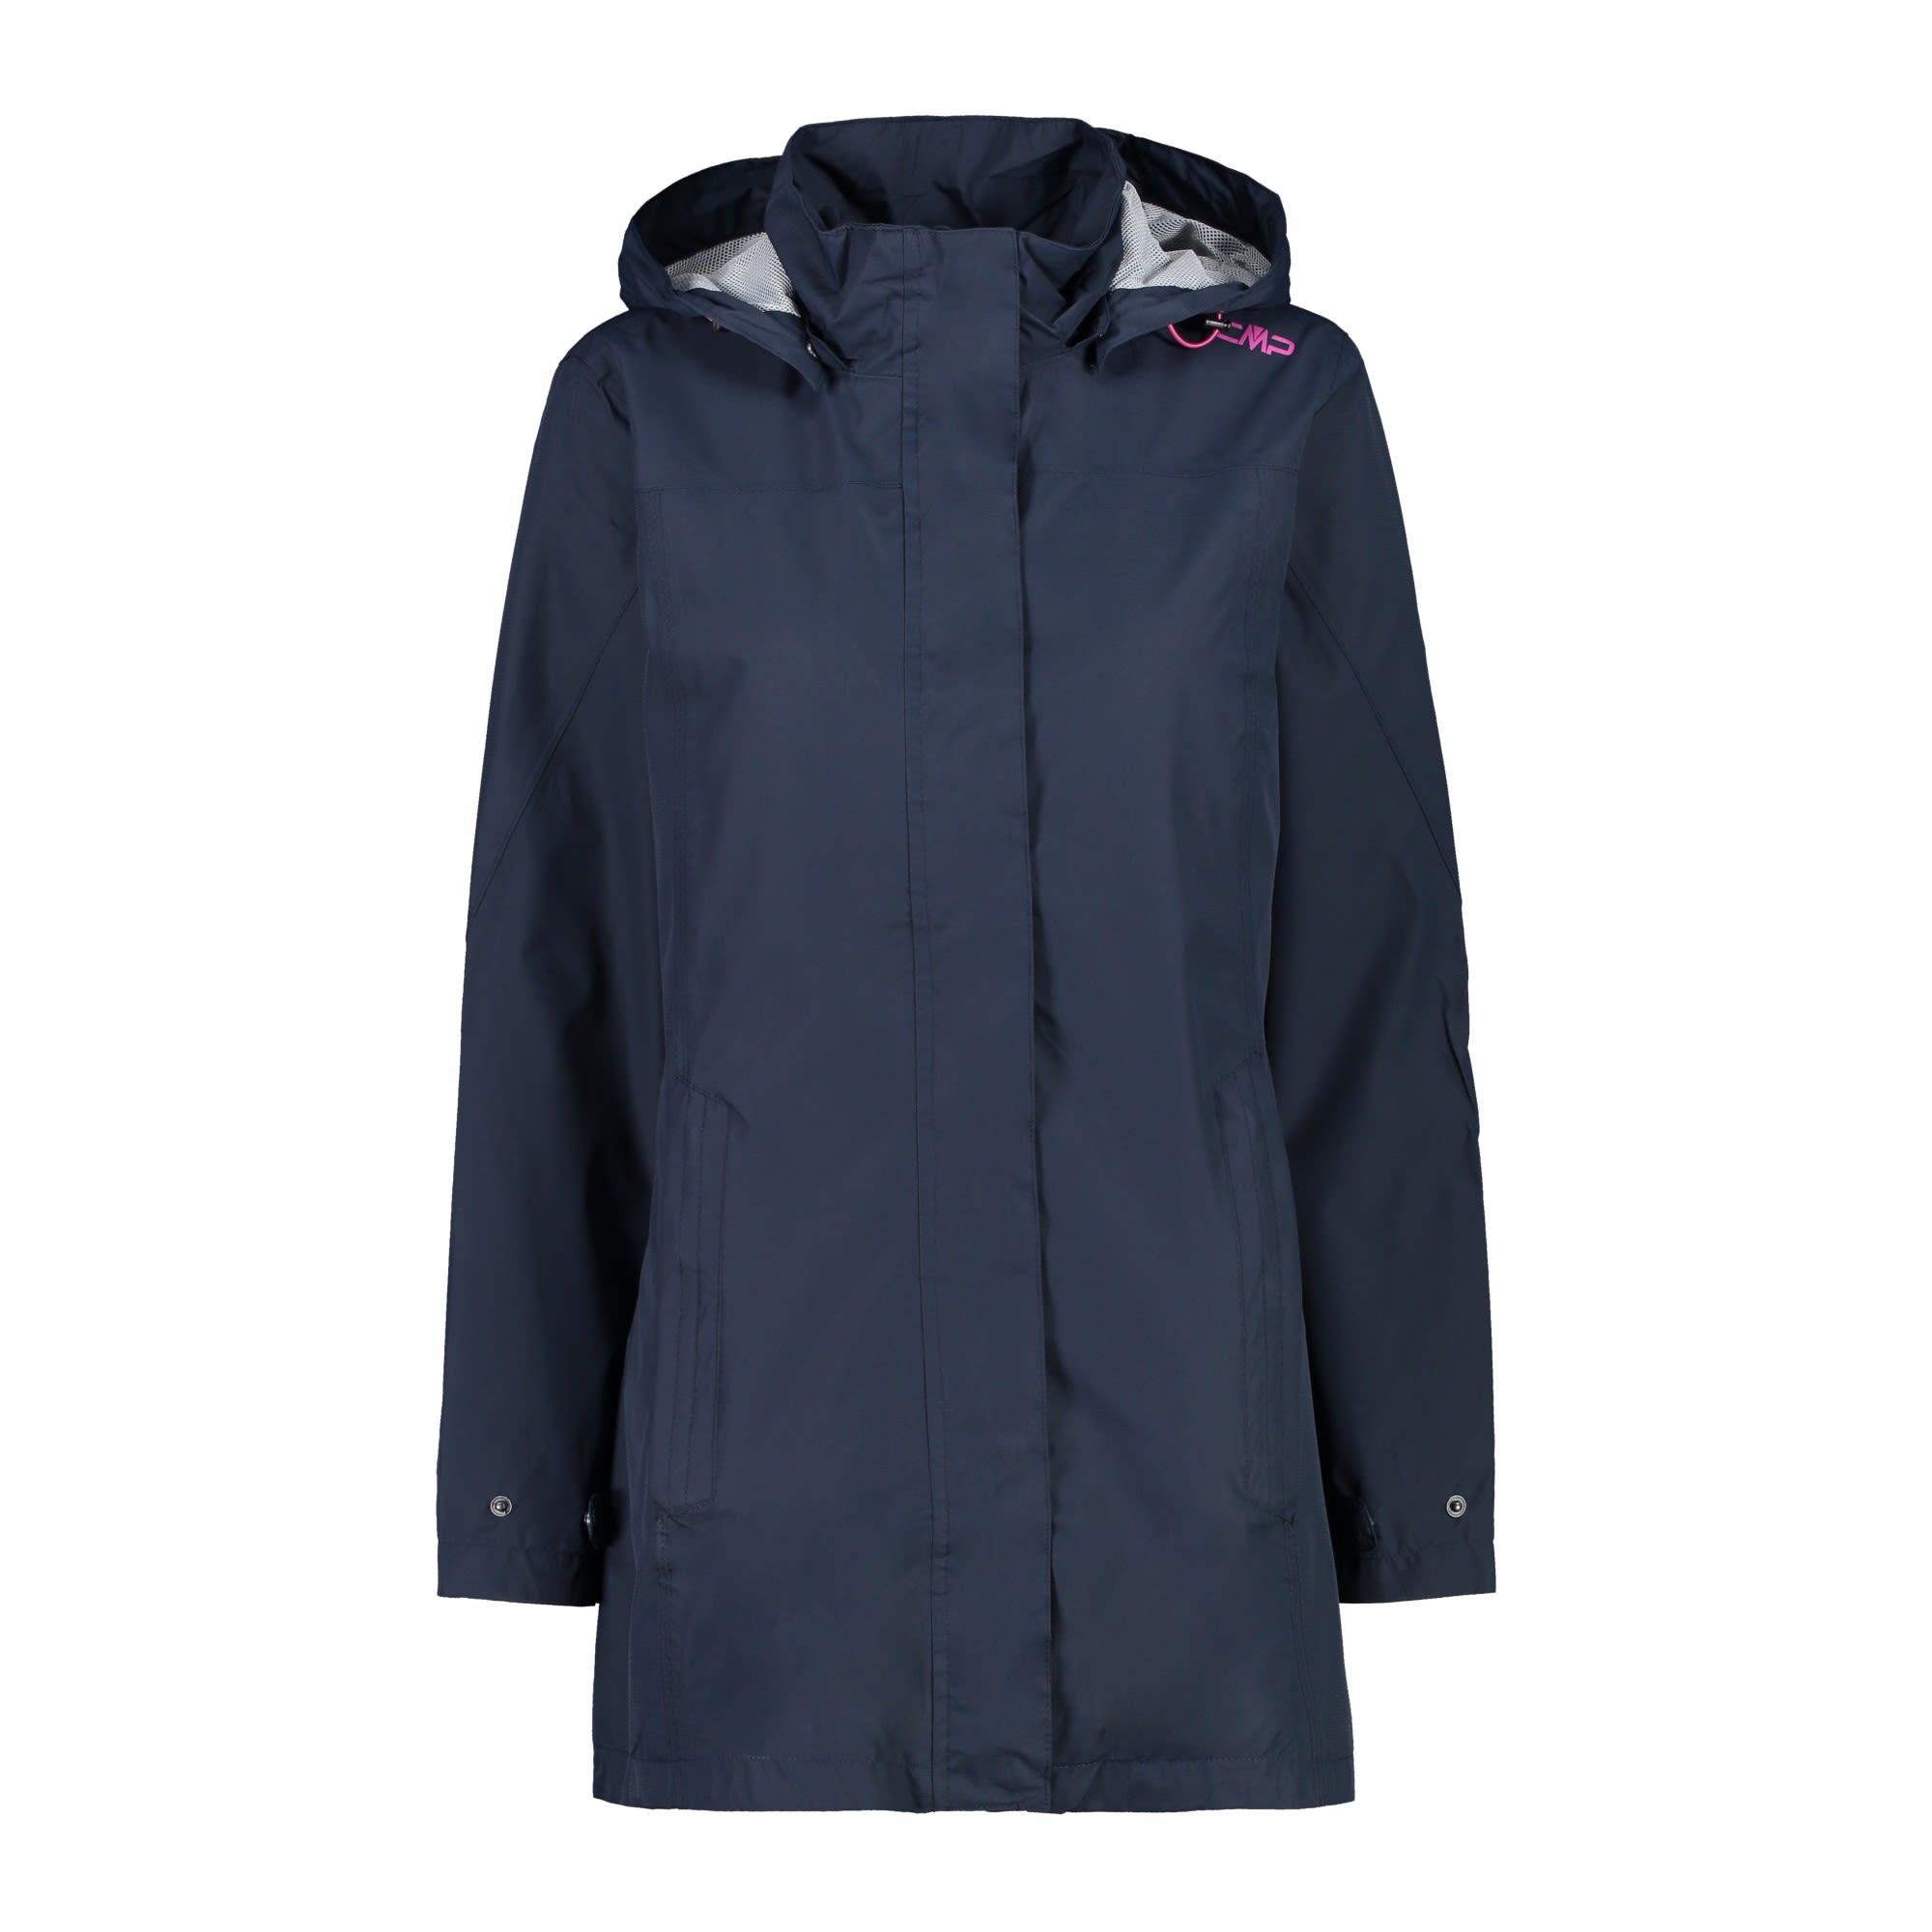 CMP Jacket Snaps Hood II Schwarz- Female Regenjacken und Hardshells- Grsse 34 - Farbe Blackblue unter CMP